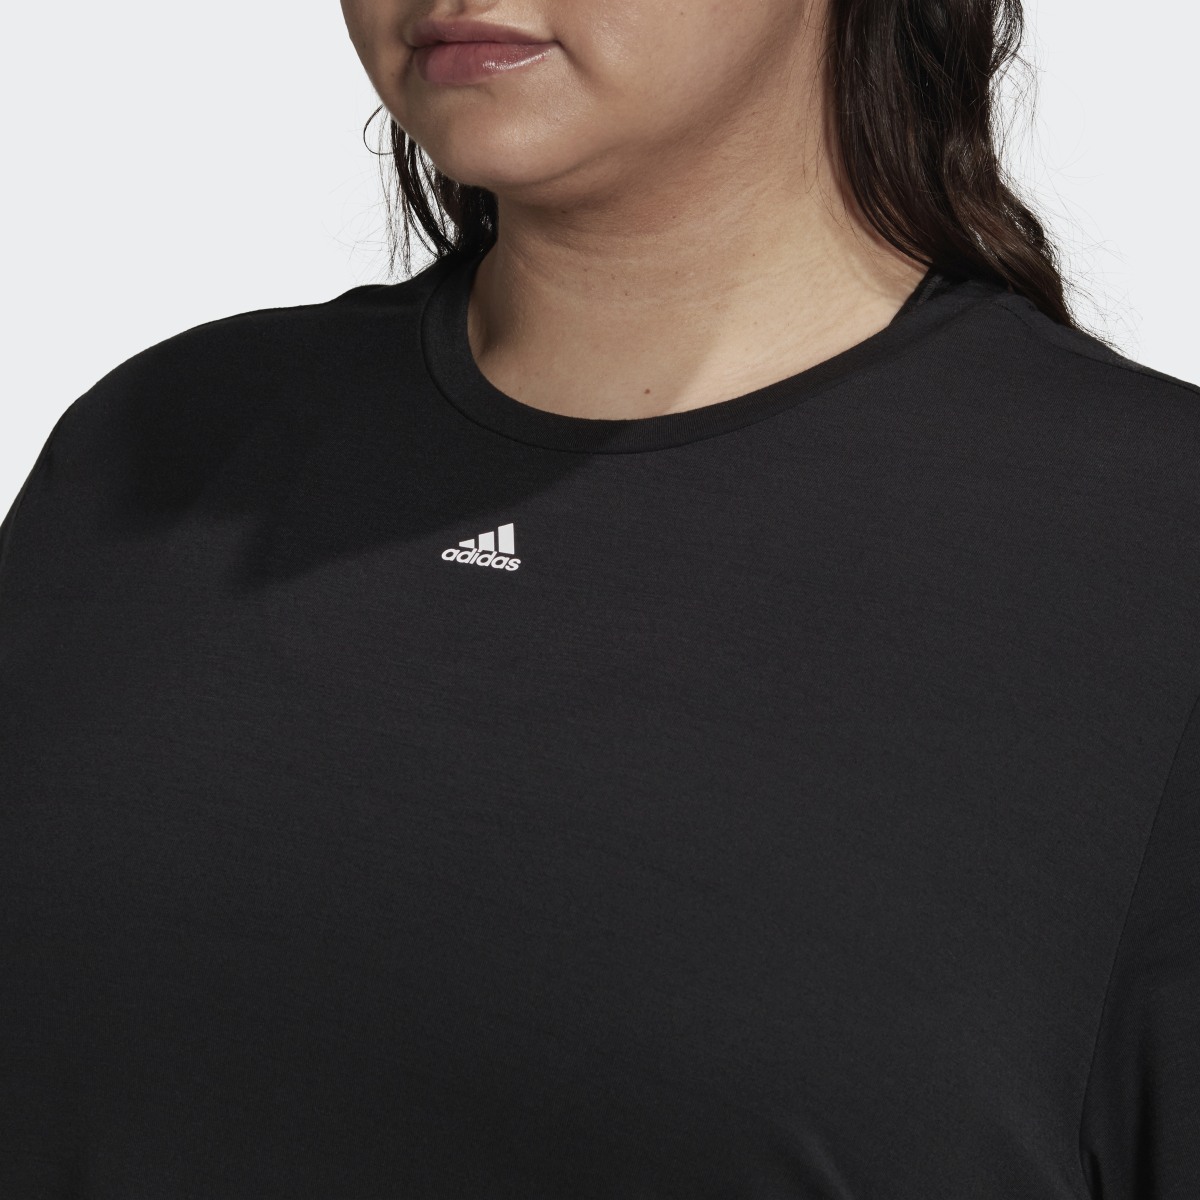 Adidas Train Icons 3-Stripes T-Shirt (Plus Size). 6